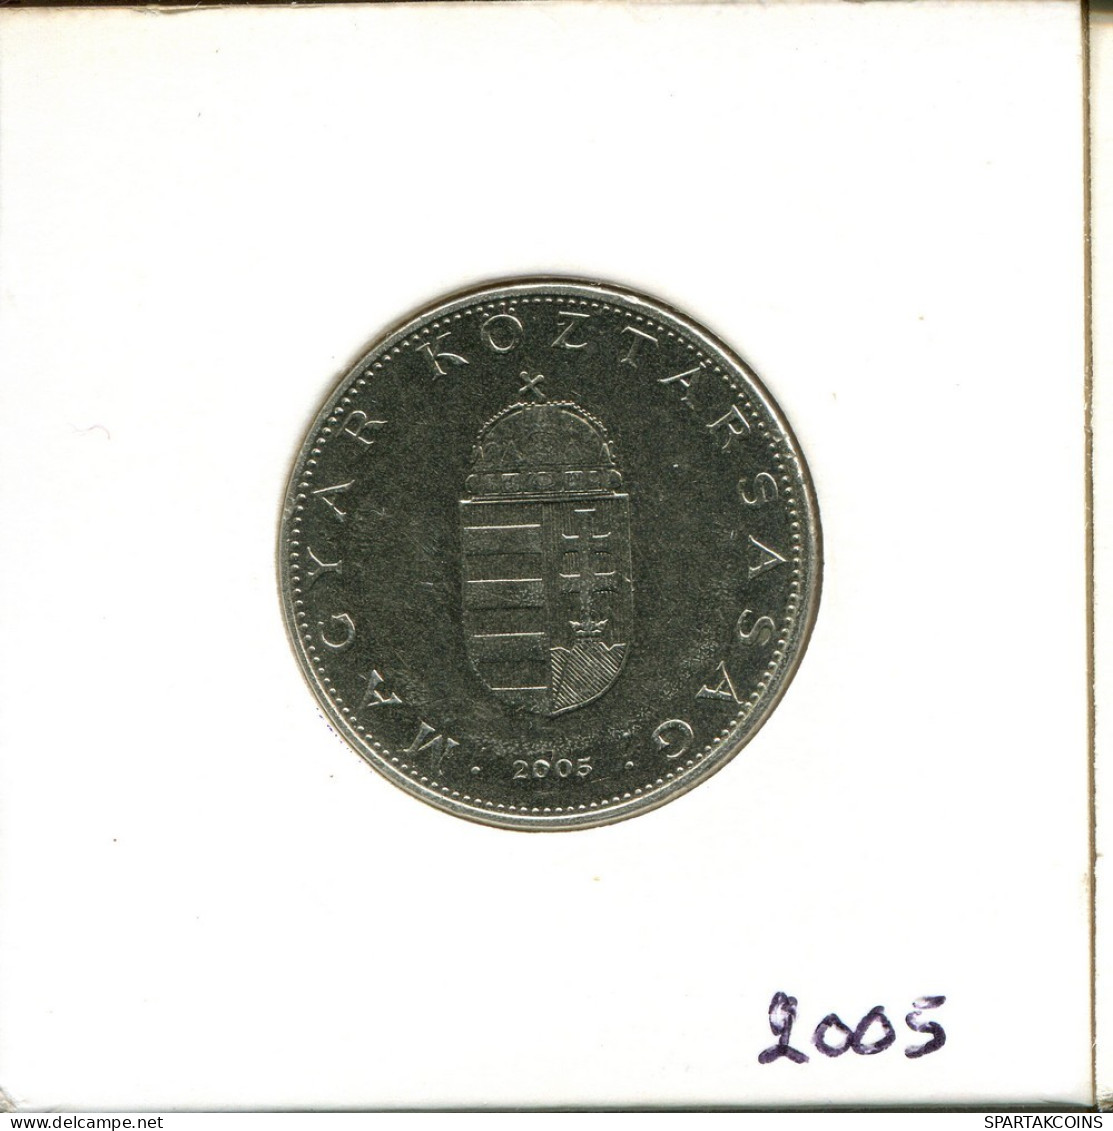 10 FORINT 2005 HUNGRÍA HUNGARY Moneda #AS901.E.A - Hungary